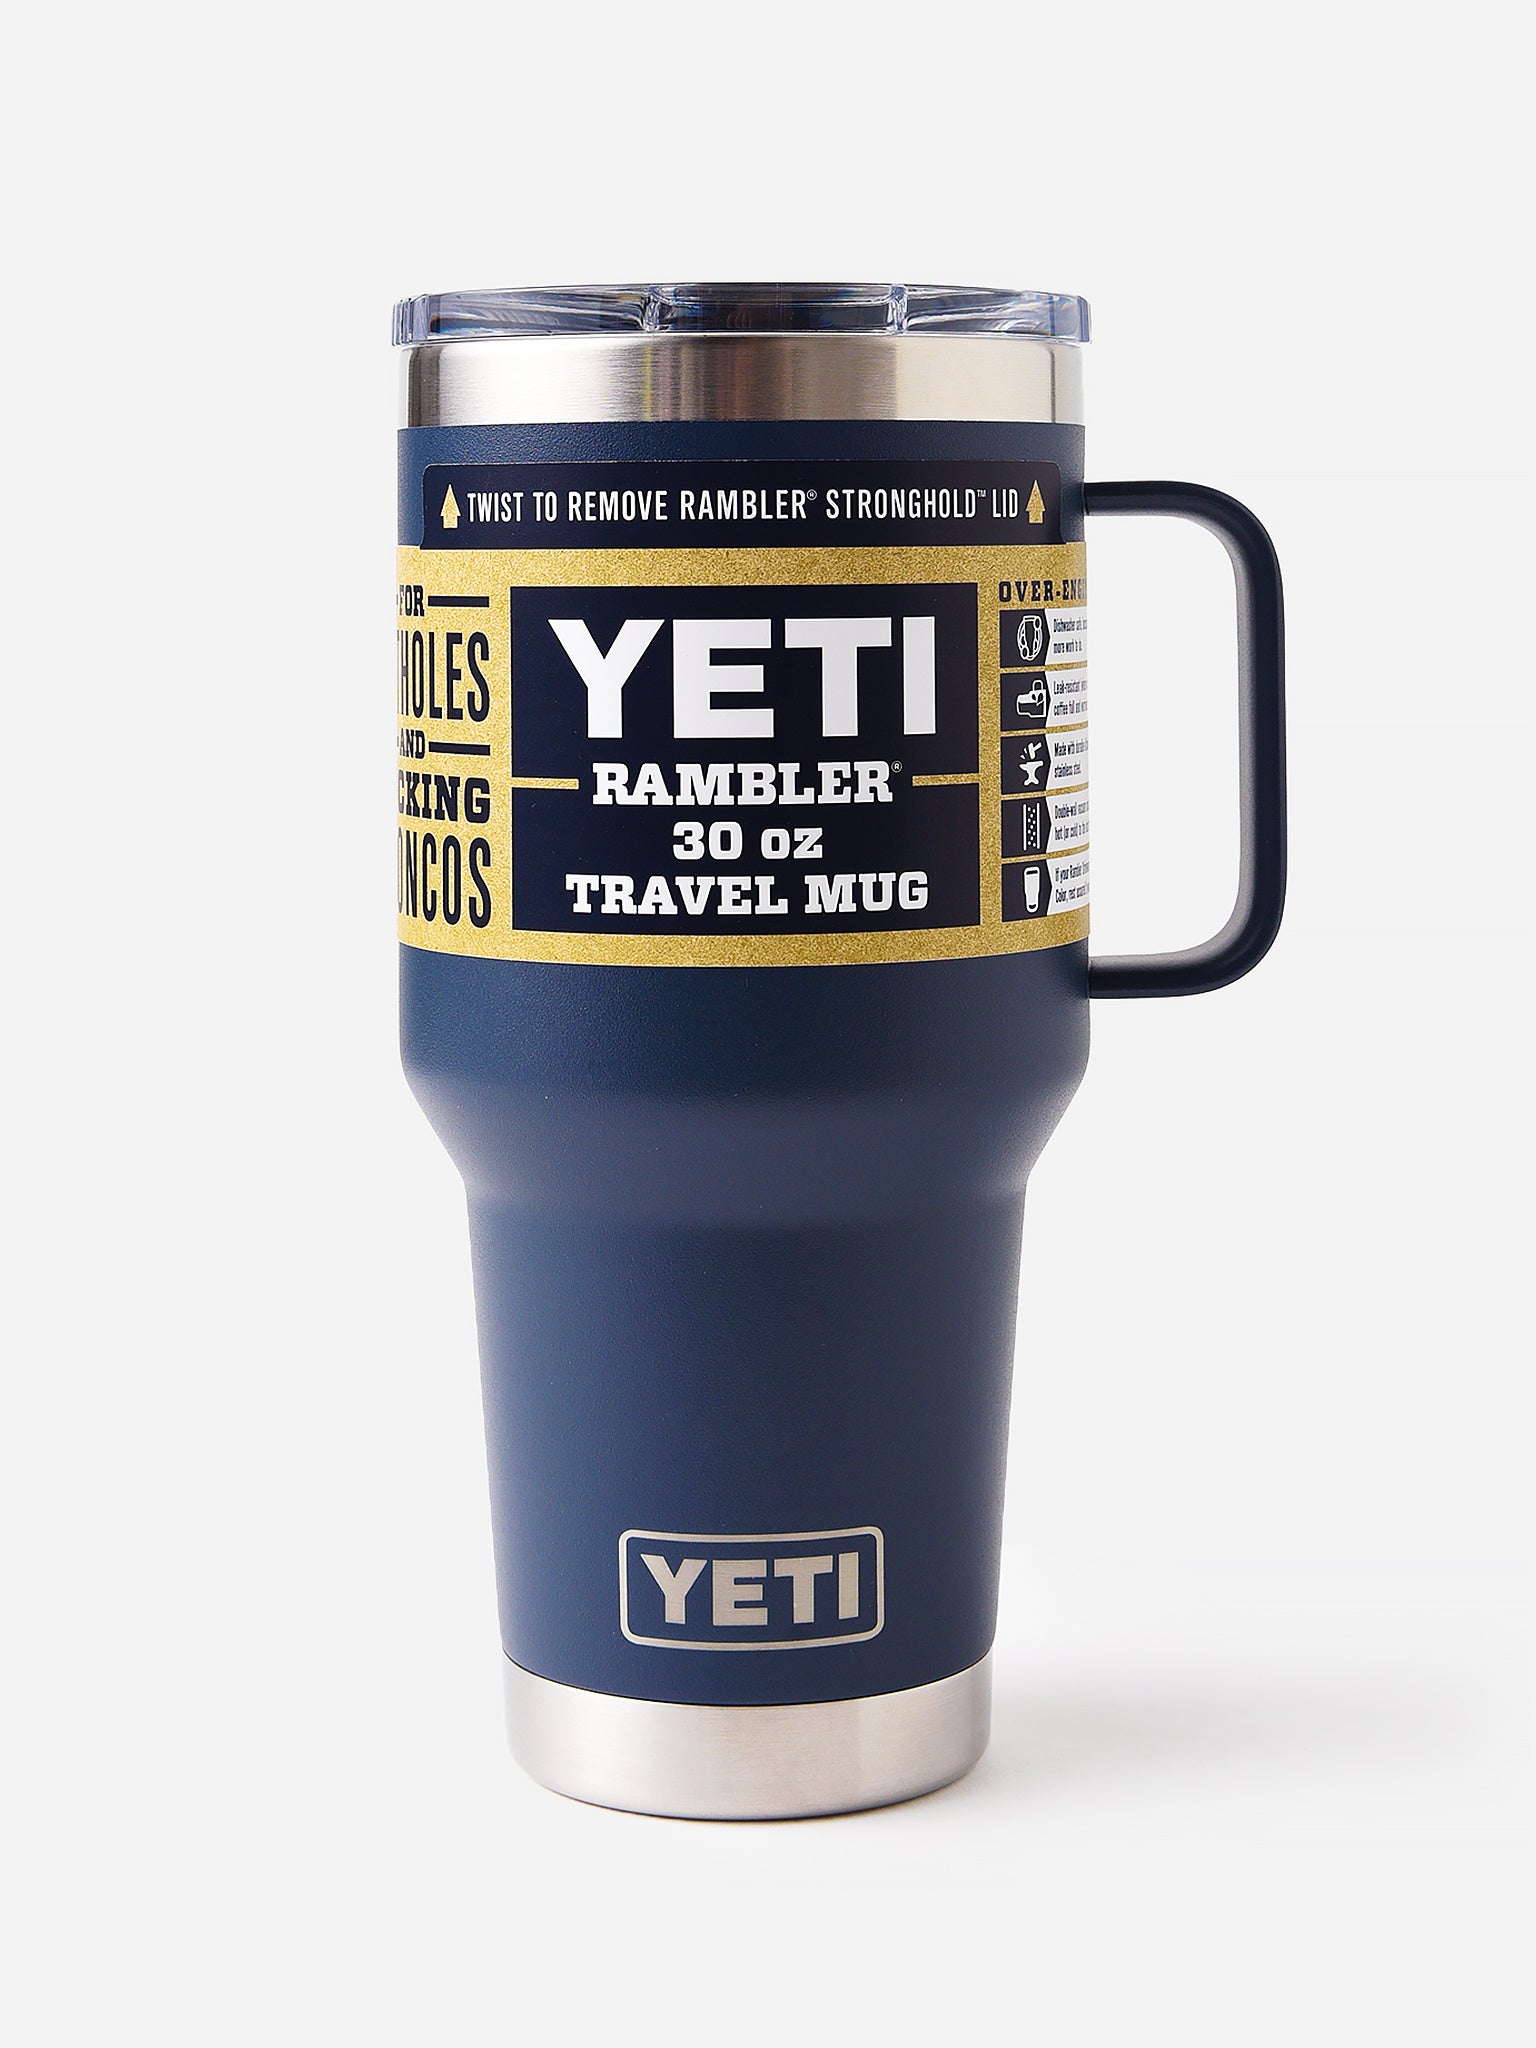 Yeti Rambler 30oz Travel Mug with Stronghold Lid –